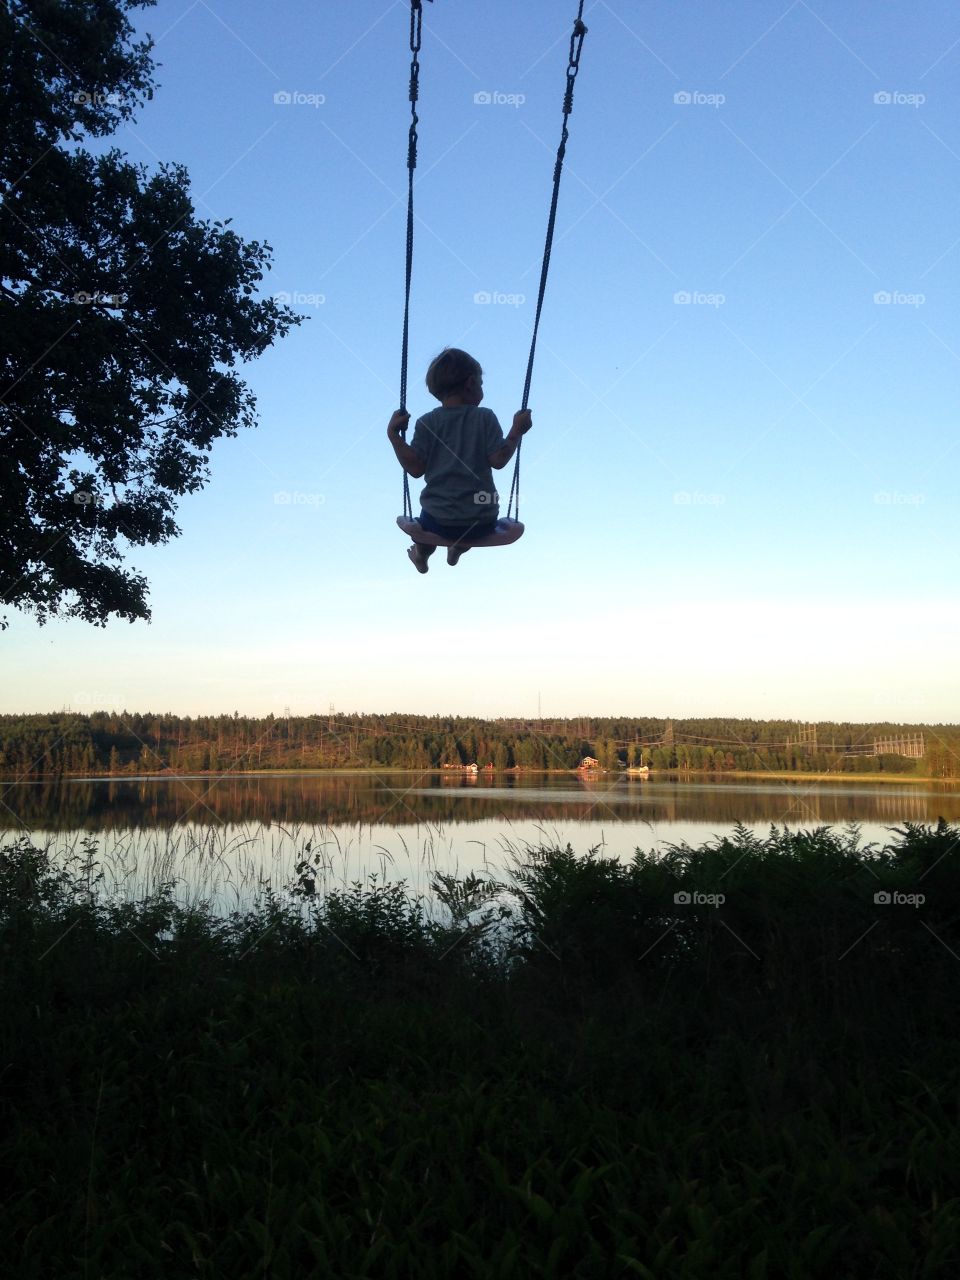 Kid in swing